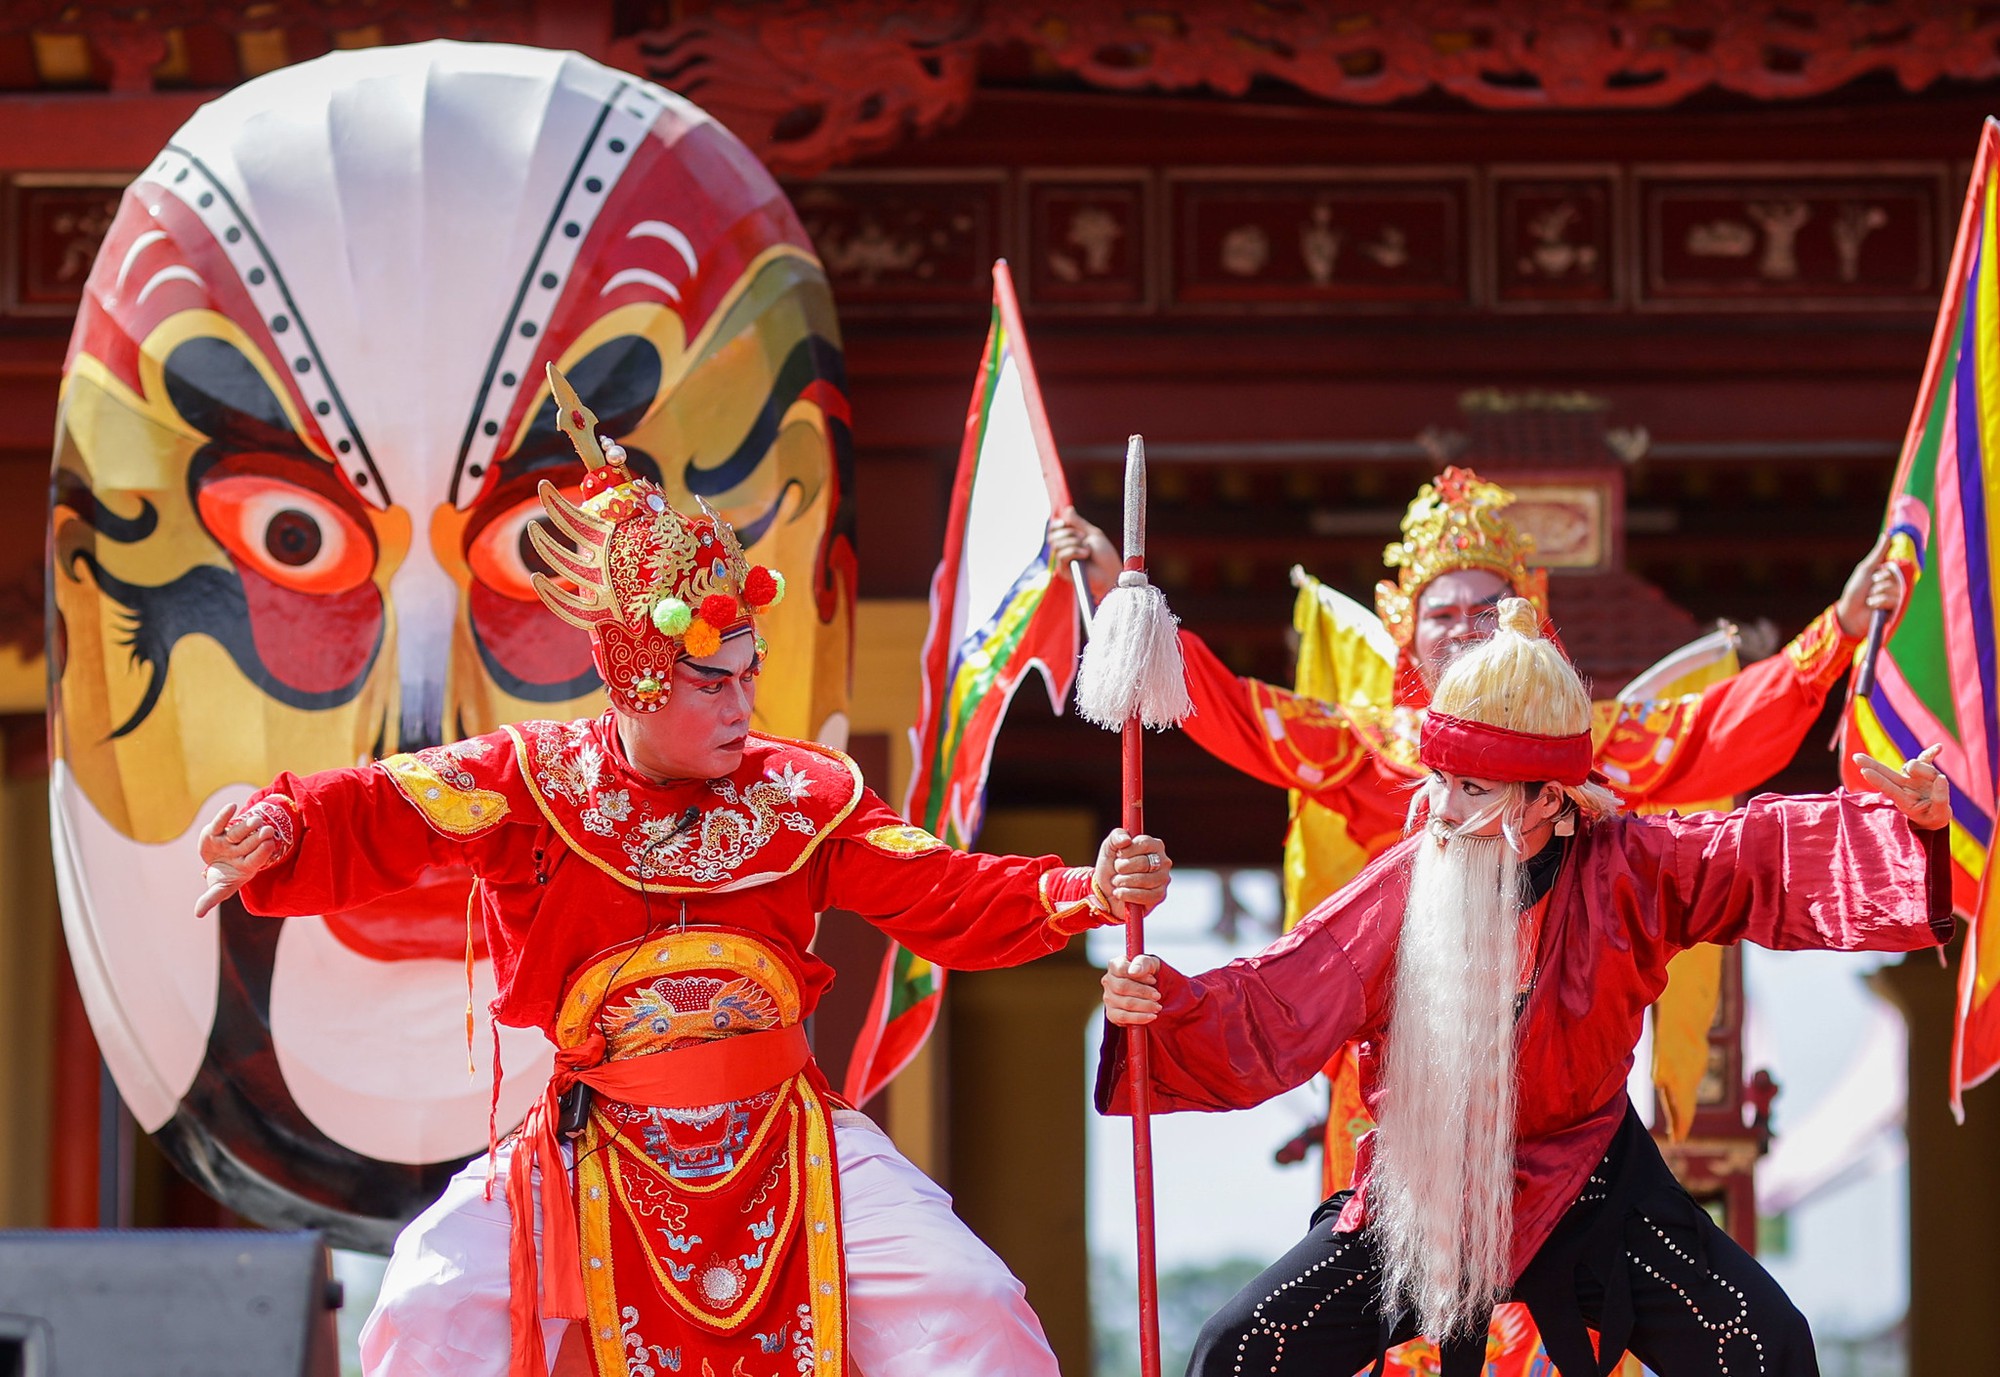 Nghệ thuật tuồng Huế đã trải qua ba thế kỷ phát triển trong dòng truyền thống văn hóa Phú Xuân và phát triển rực rỡ dưới triều đại các vua nhà Nguyễn.